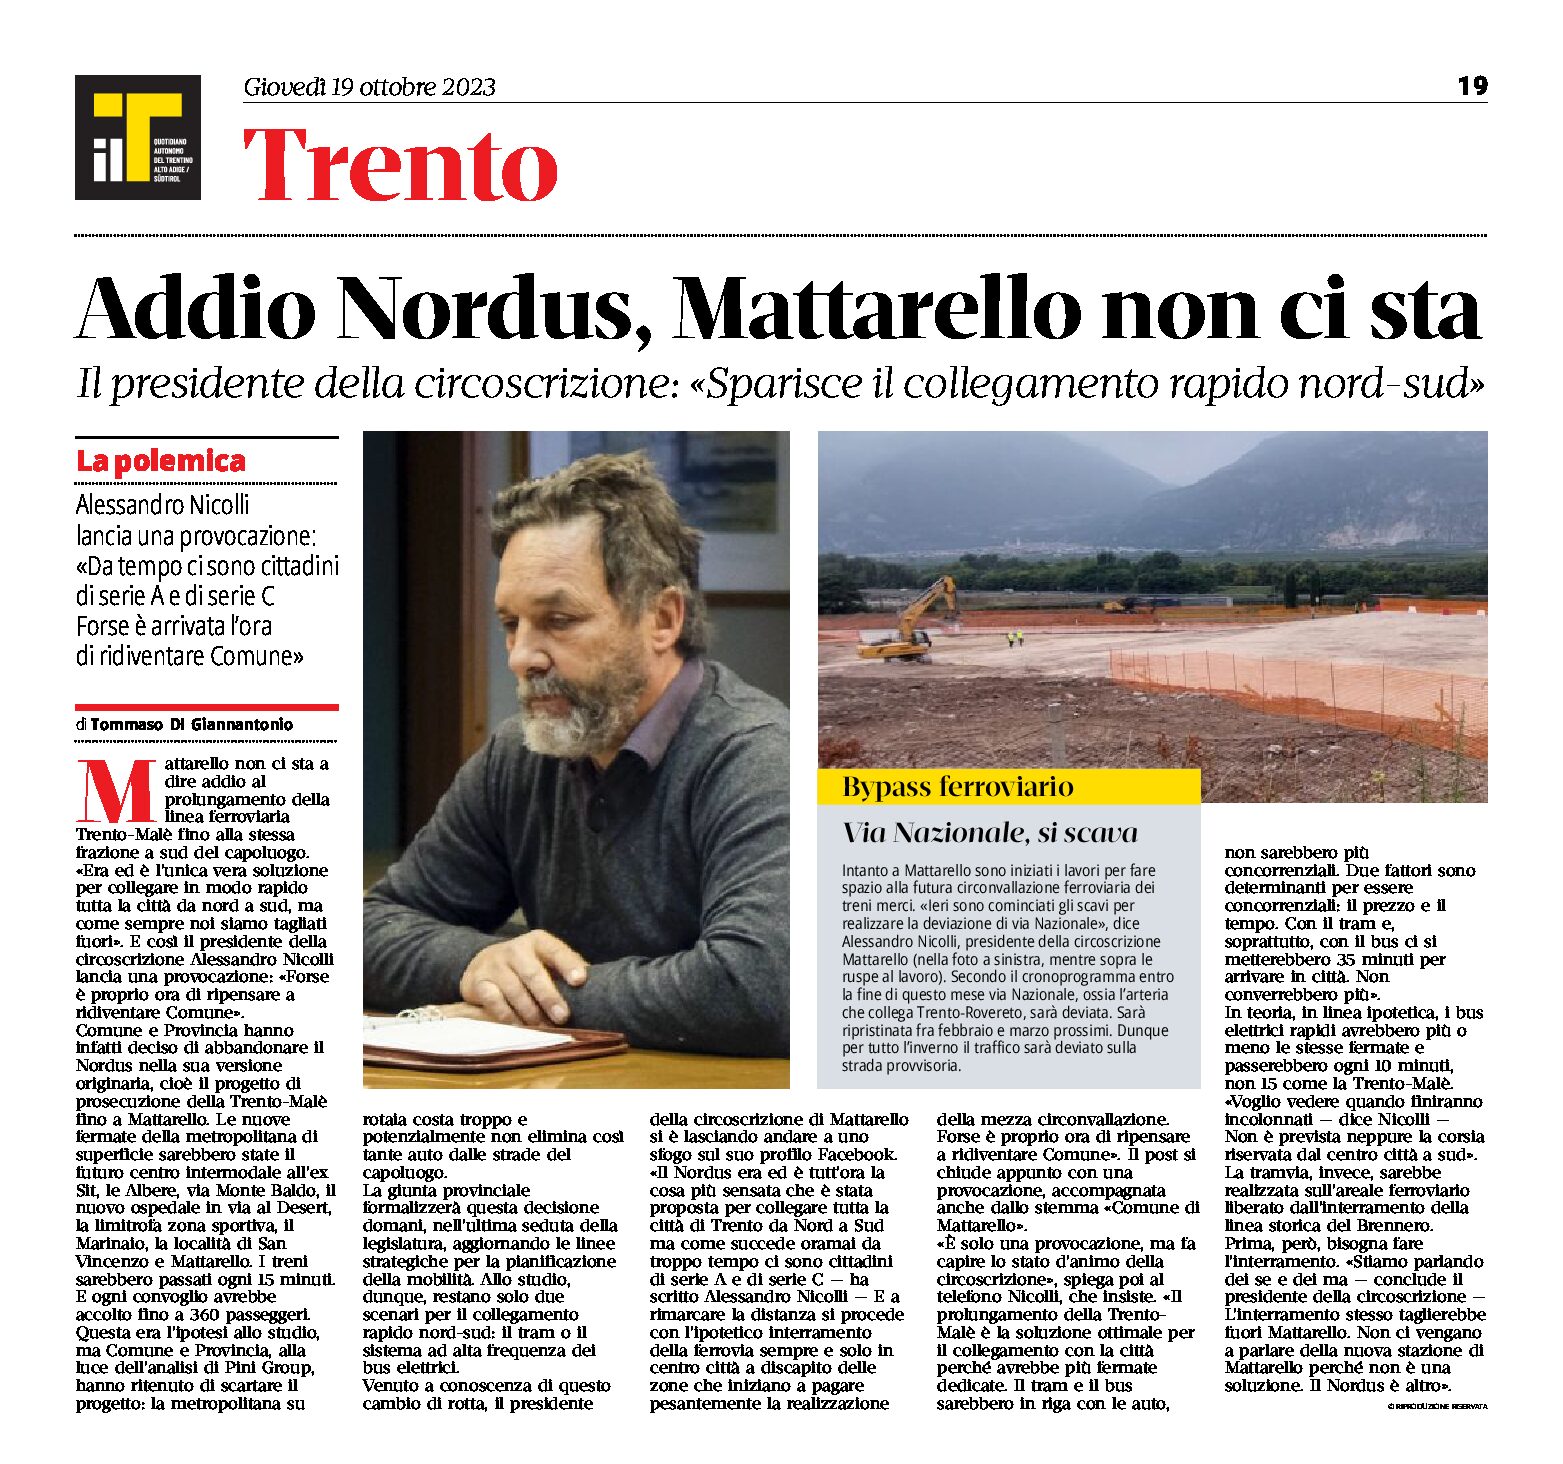 Trento: addio Nordus, Mattarello non ci sta a perdere il collegamento rapido nord-sud